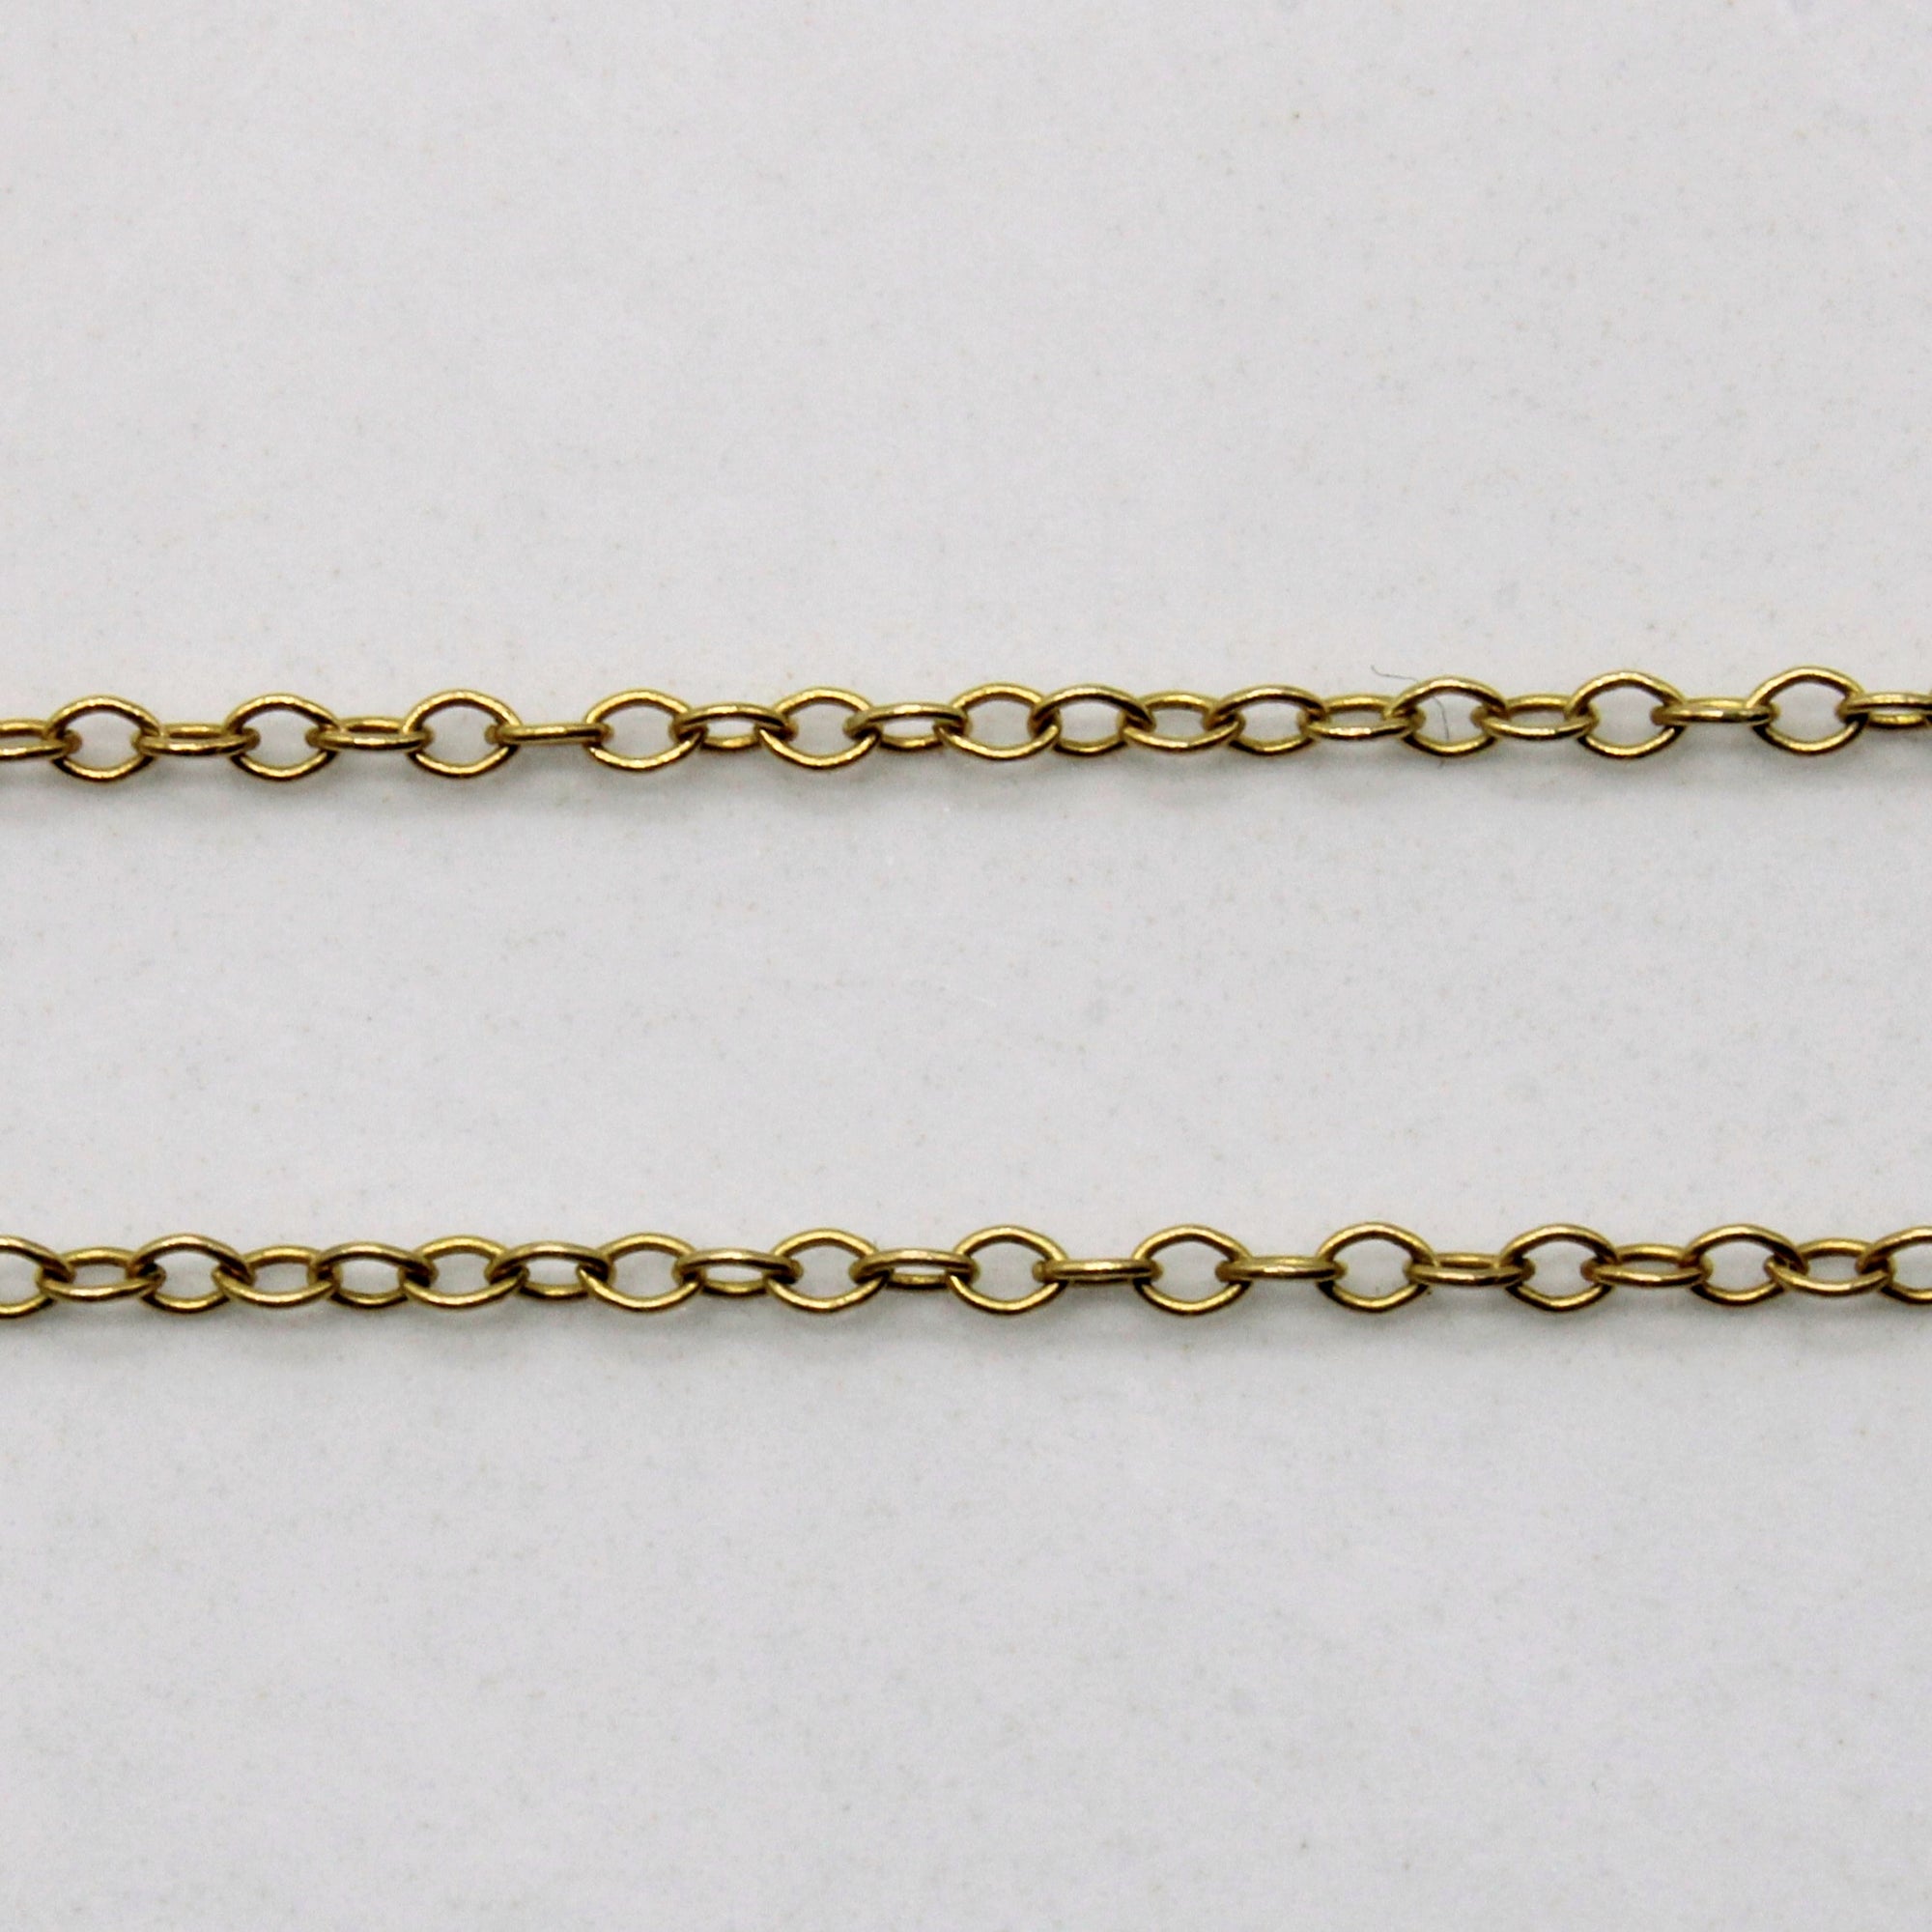 1979 Hallmarked Garnet Pendant & Necklace | 1.15ctw | 18